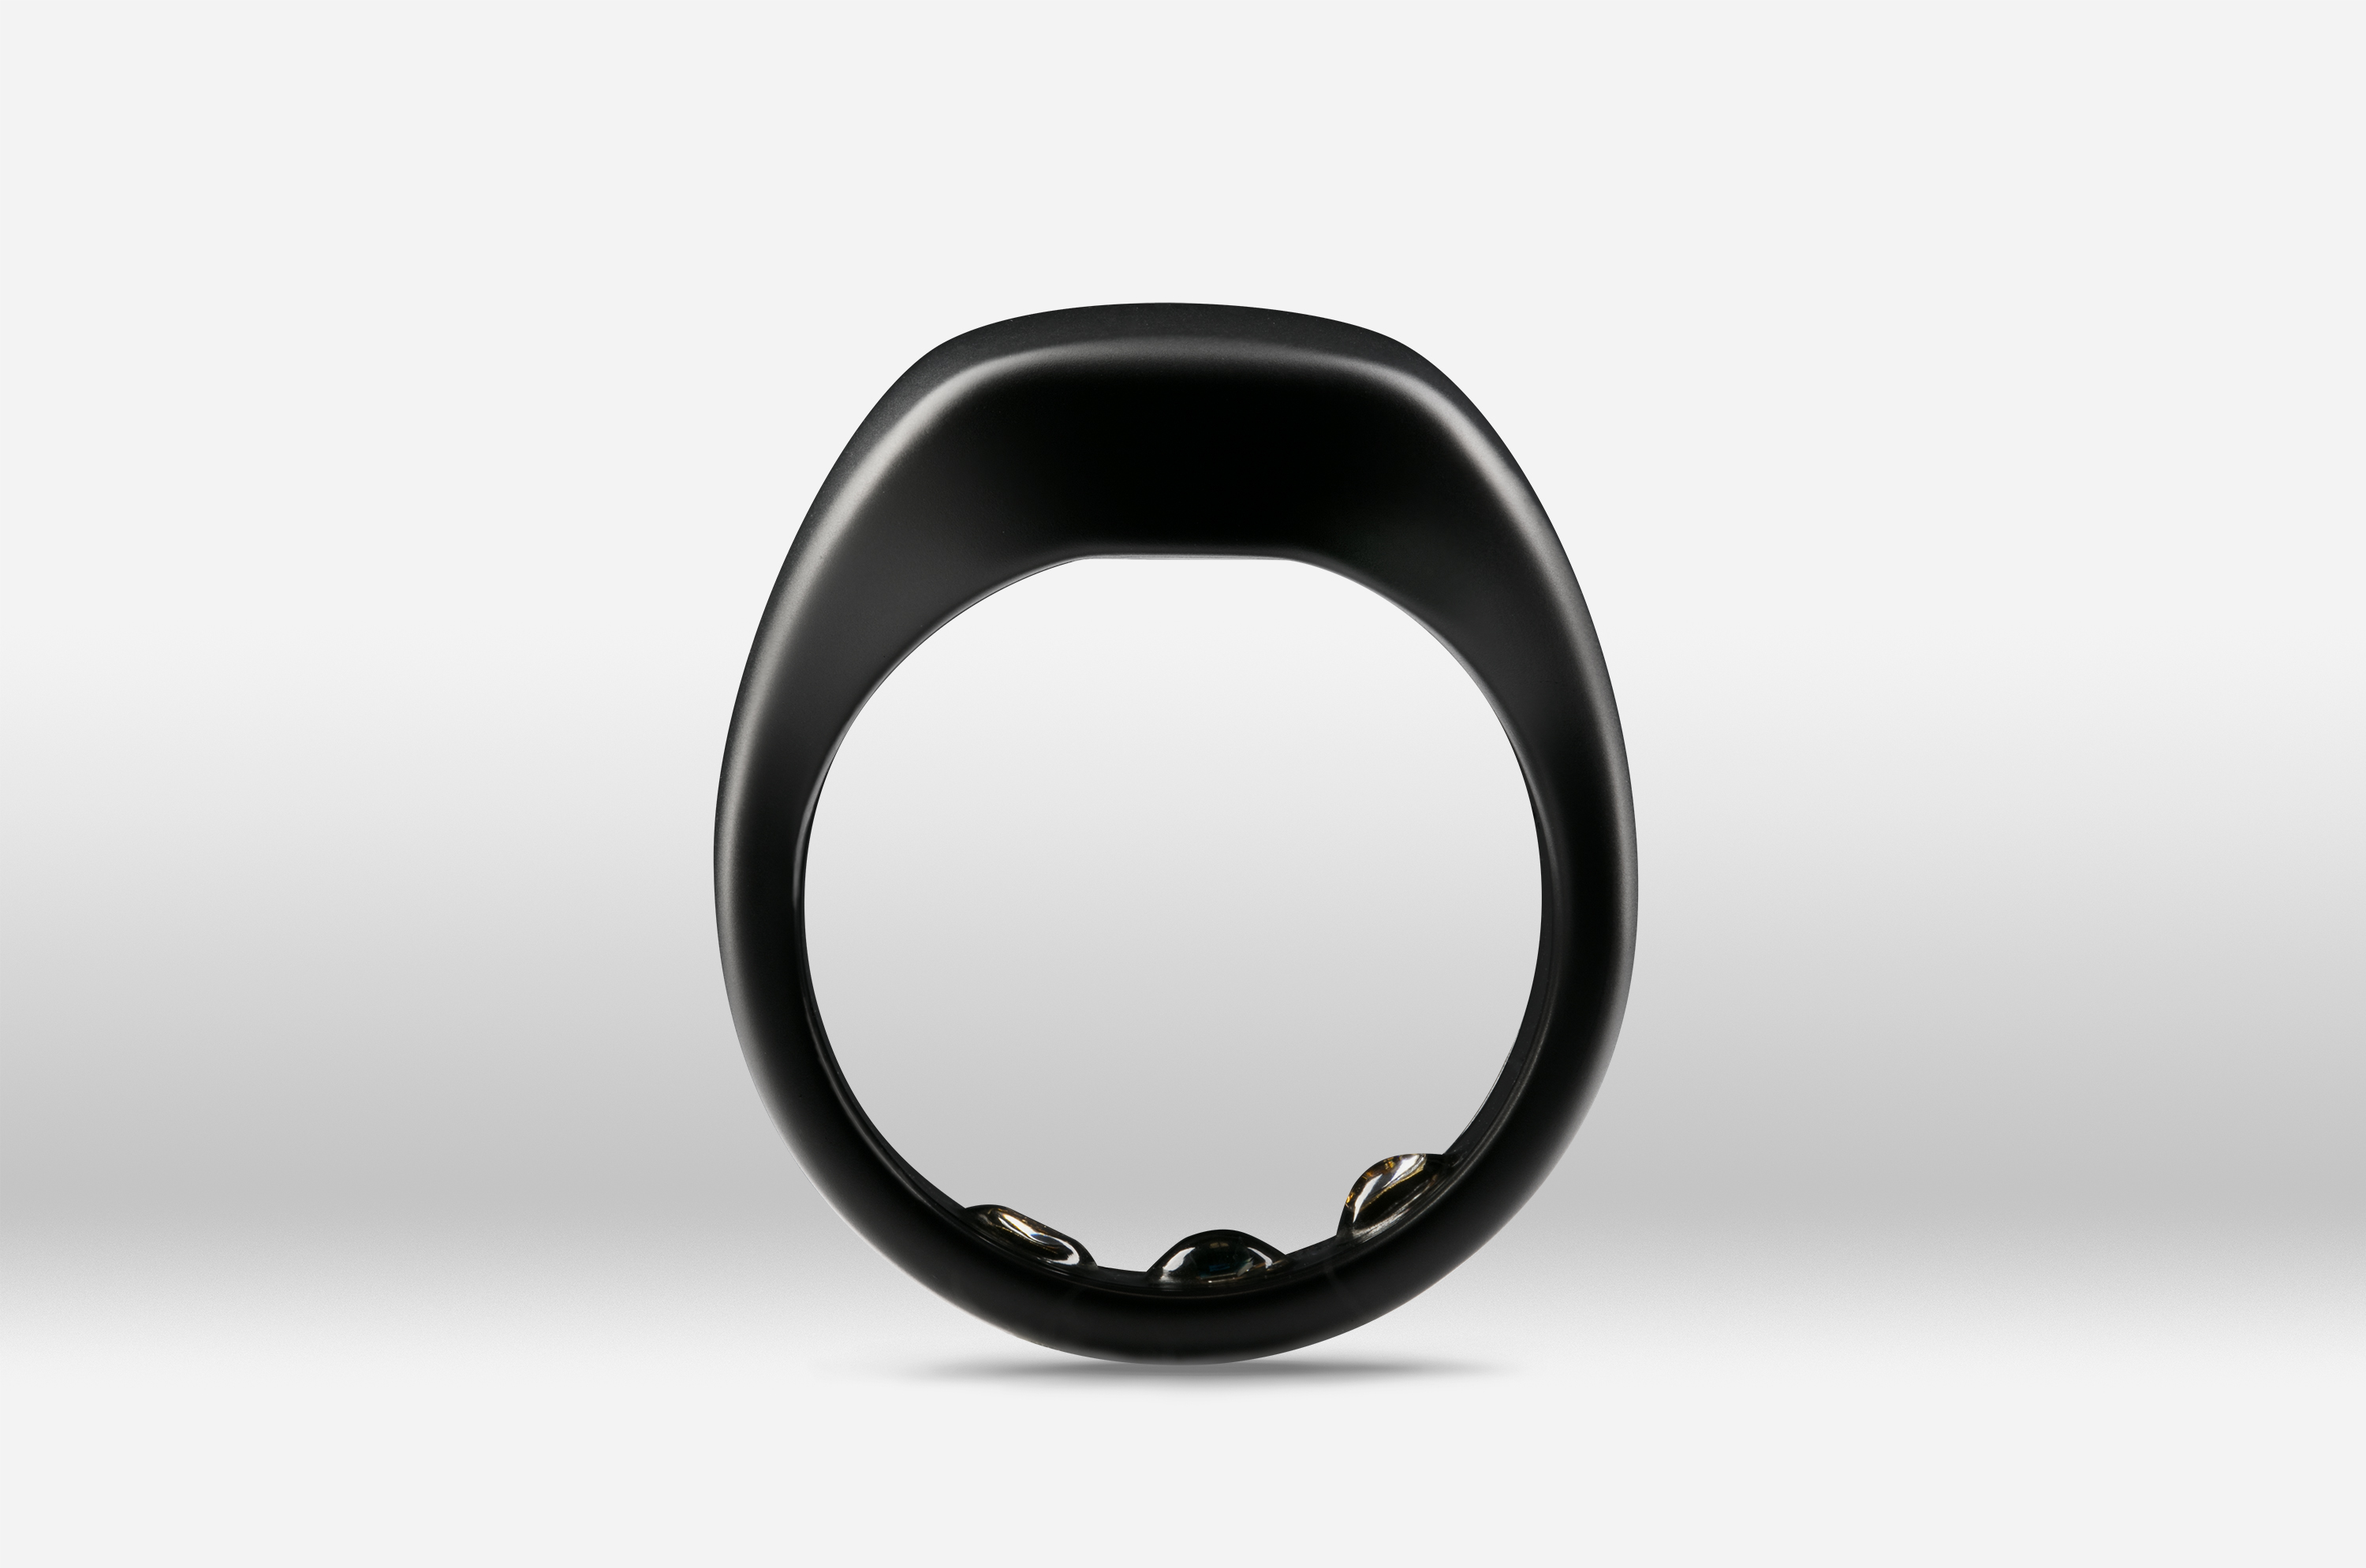 ŌURA Ring - Stealth Black - Buy Smart Rings